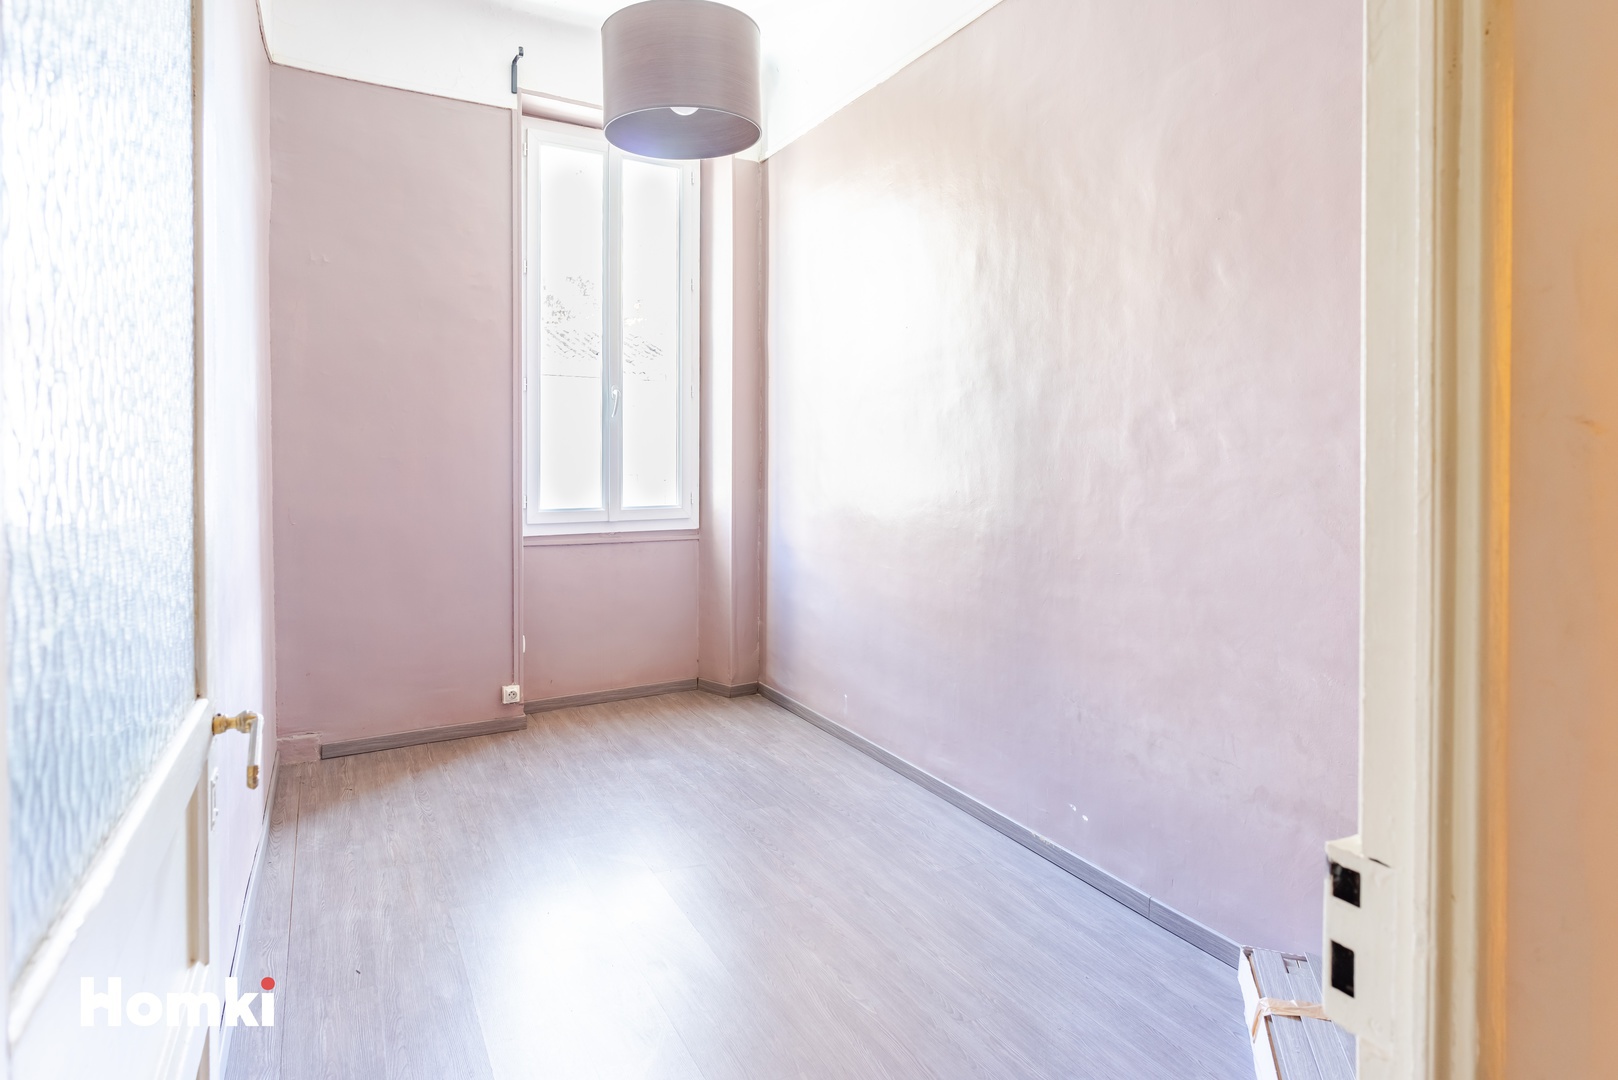 Homki - Vente Appartement  de 50.0 m² à Marseille 13010